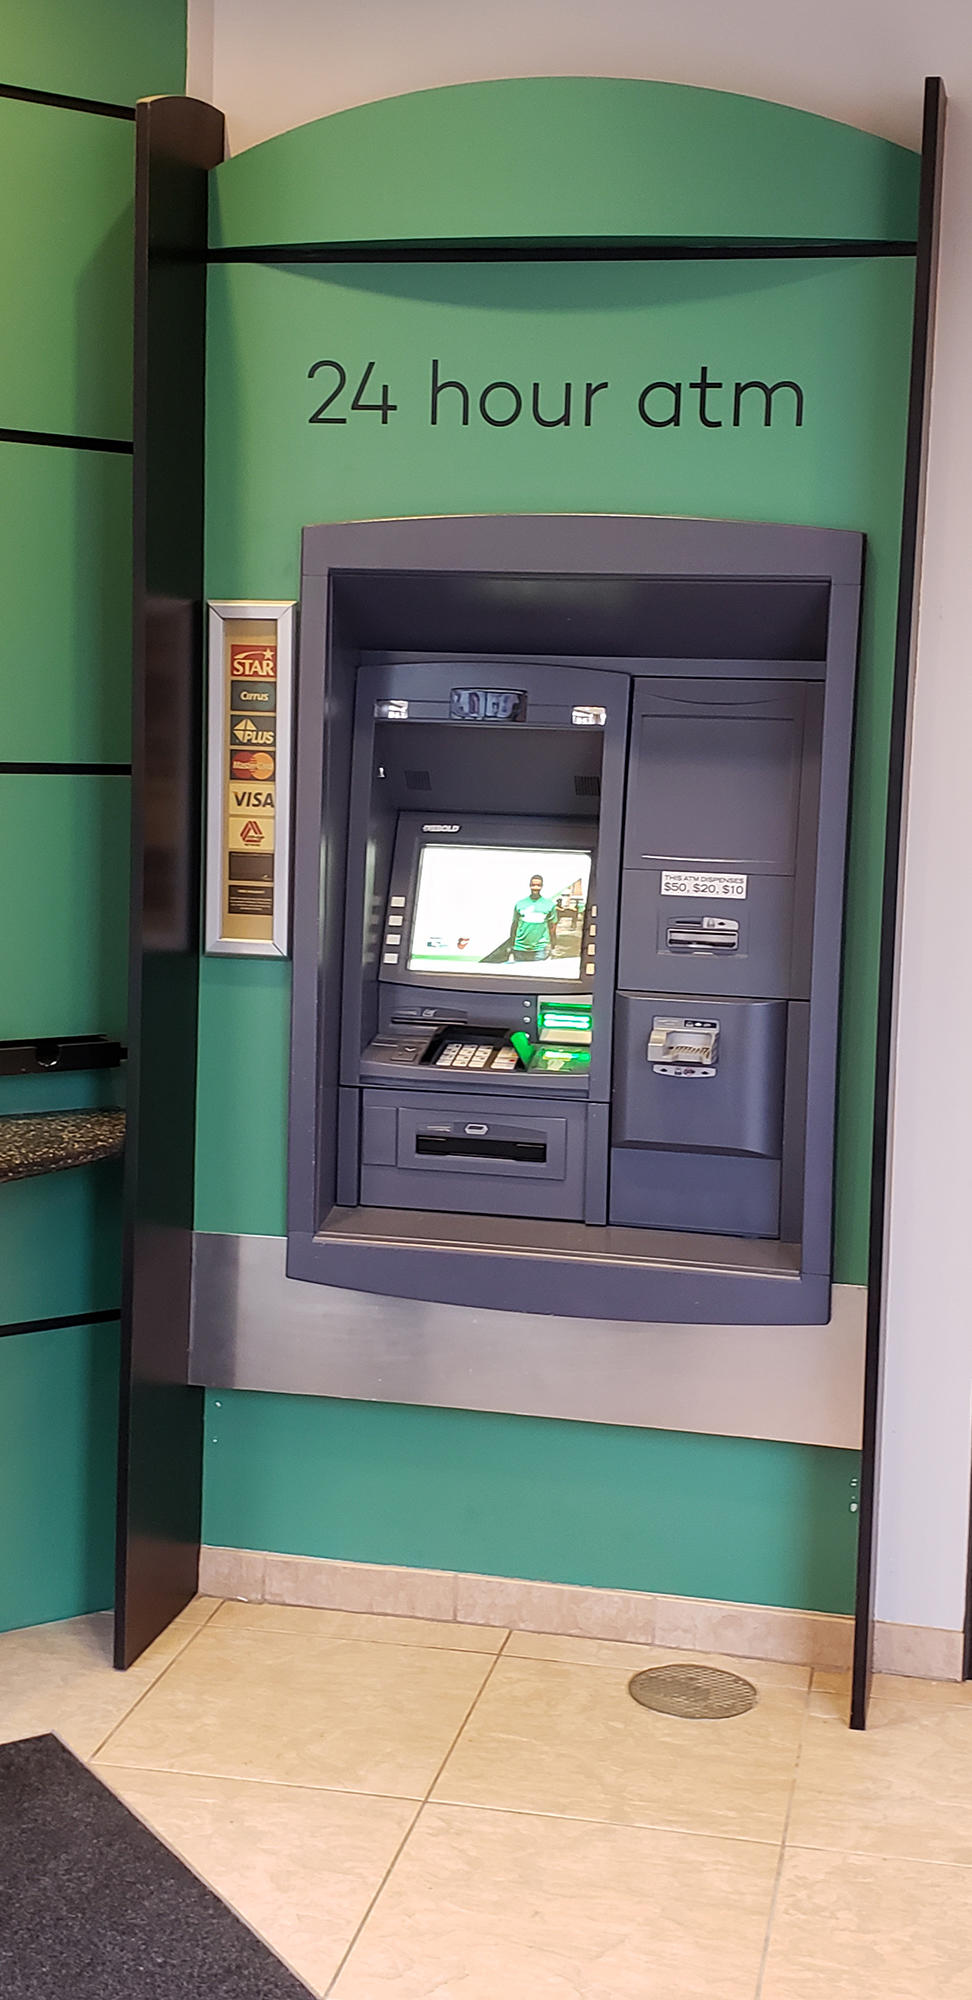 Annapolis - Annapolis Town Center branch-Vestible ATM